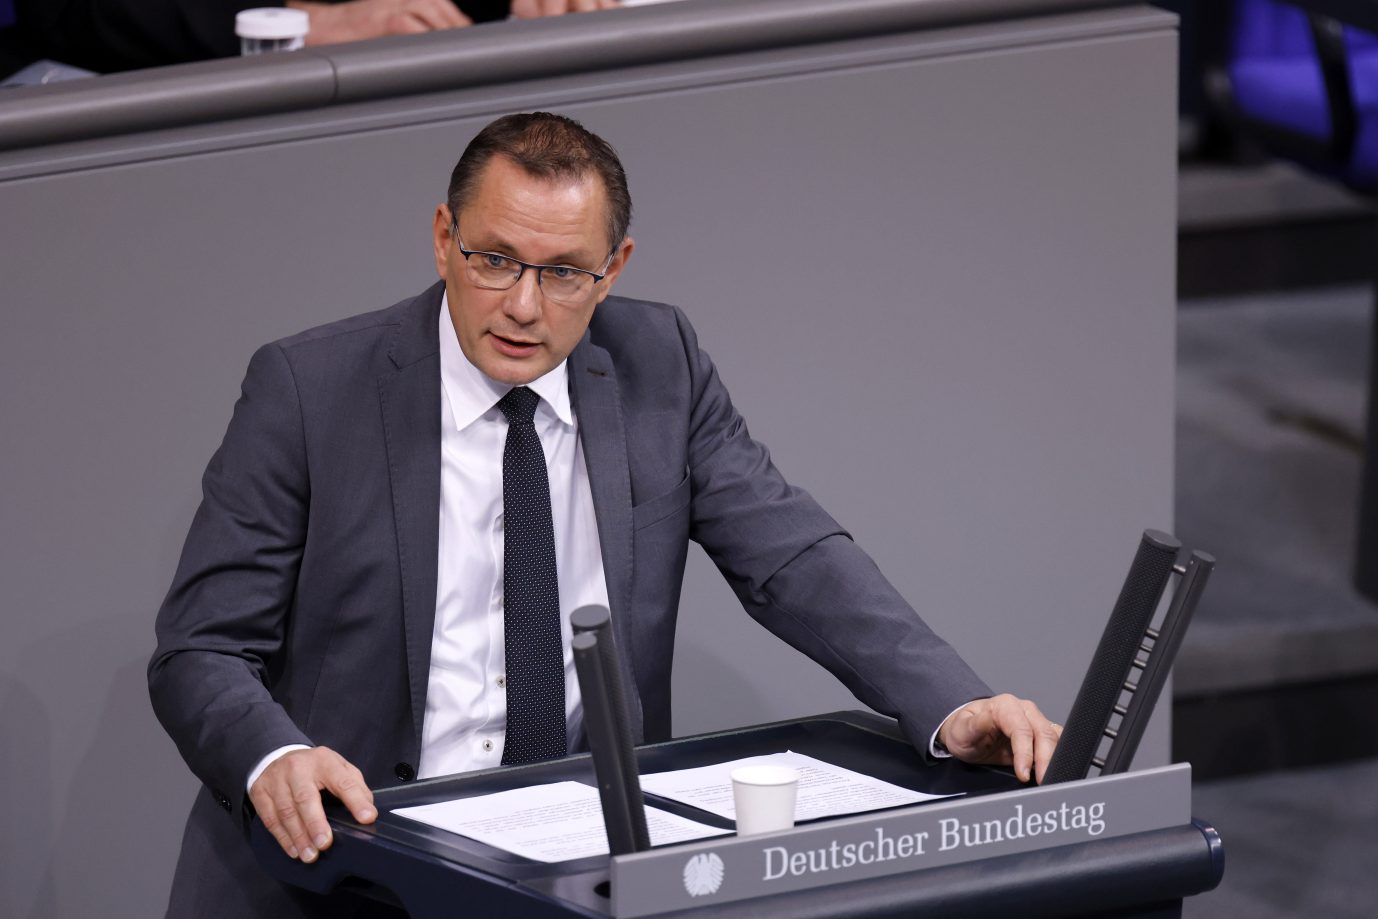 Der AfD-Fraktionsvorsitzende Tino Chrupalla bezeichnet die 2G-Plus-Regel im Bundestag als Willkür Foto: picture alliance / Geisler-Fotopress | Christoph Hardt/Geisler-Fotopres